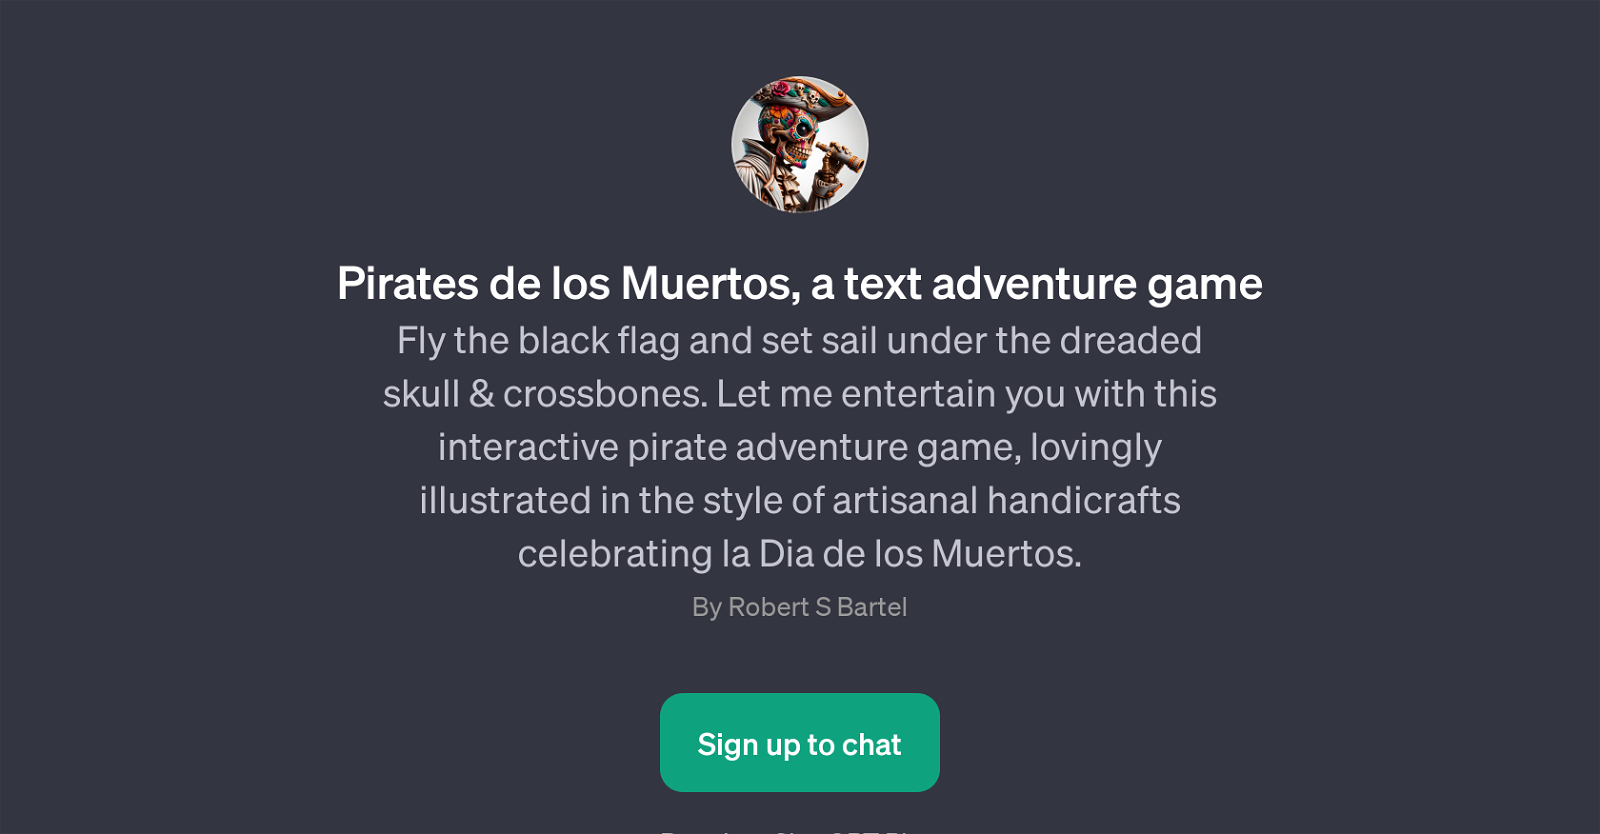 Pirates de los Muertos website